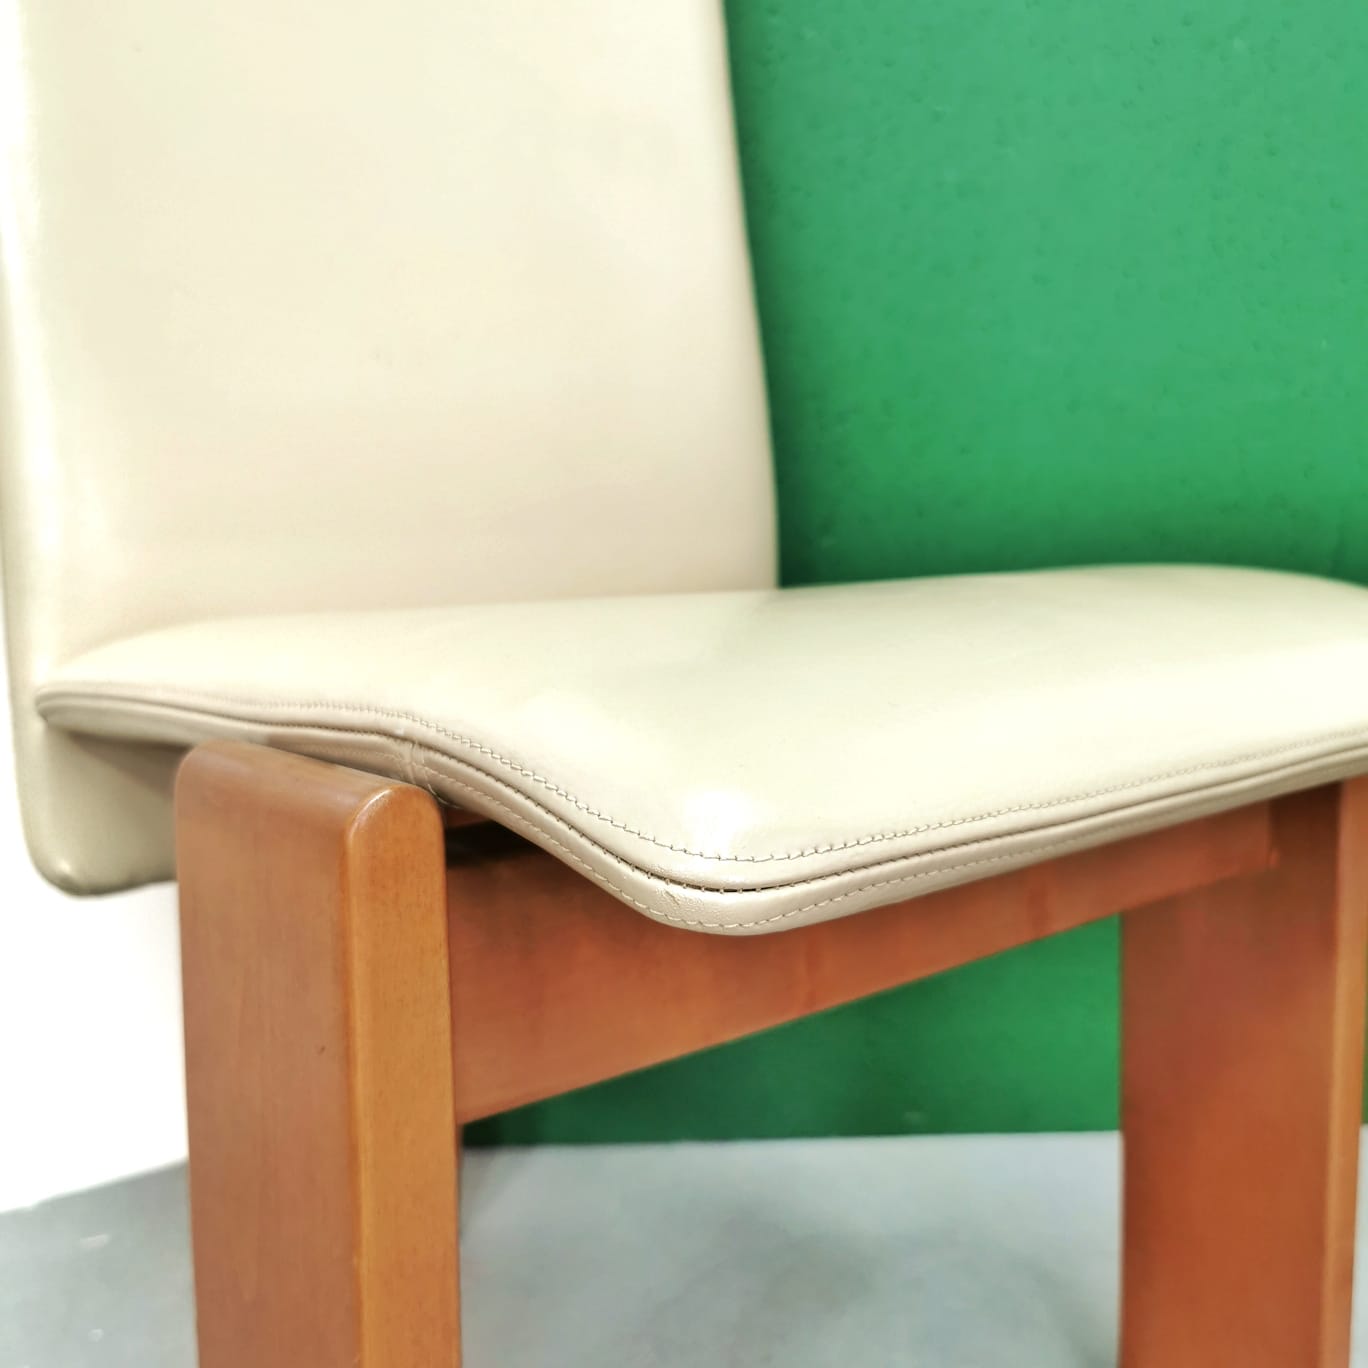 Set di 6 sedie anni 70 / 80 in pelle beige e legno chiaro